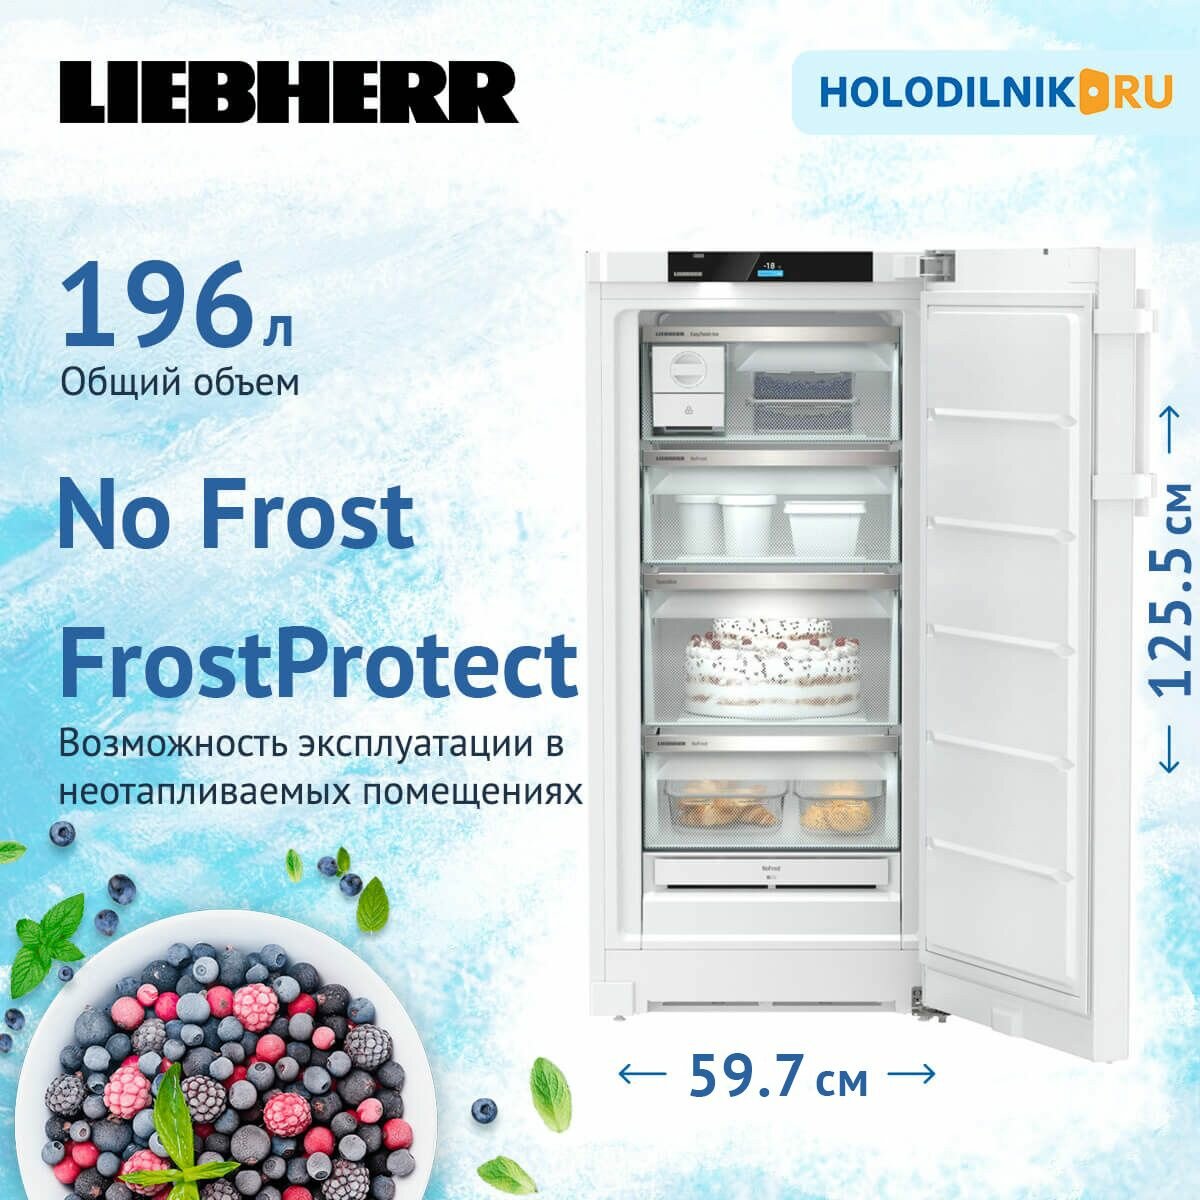 Морозильник Liebherr FNd 4254-21 001